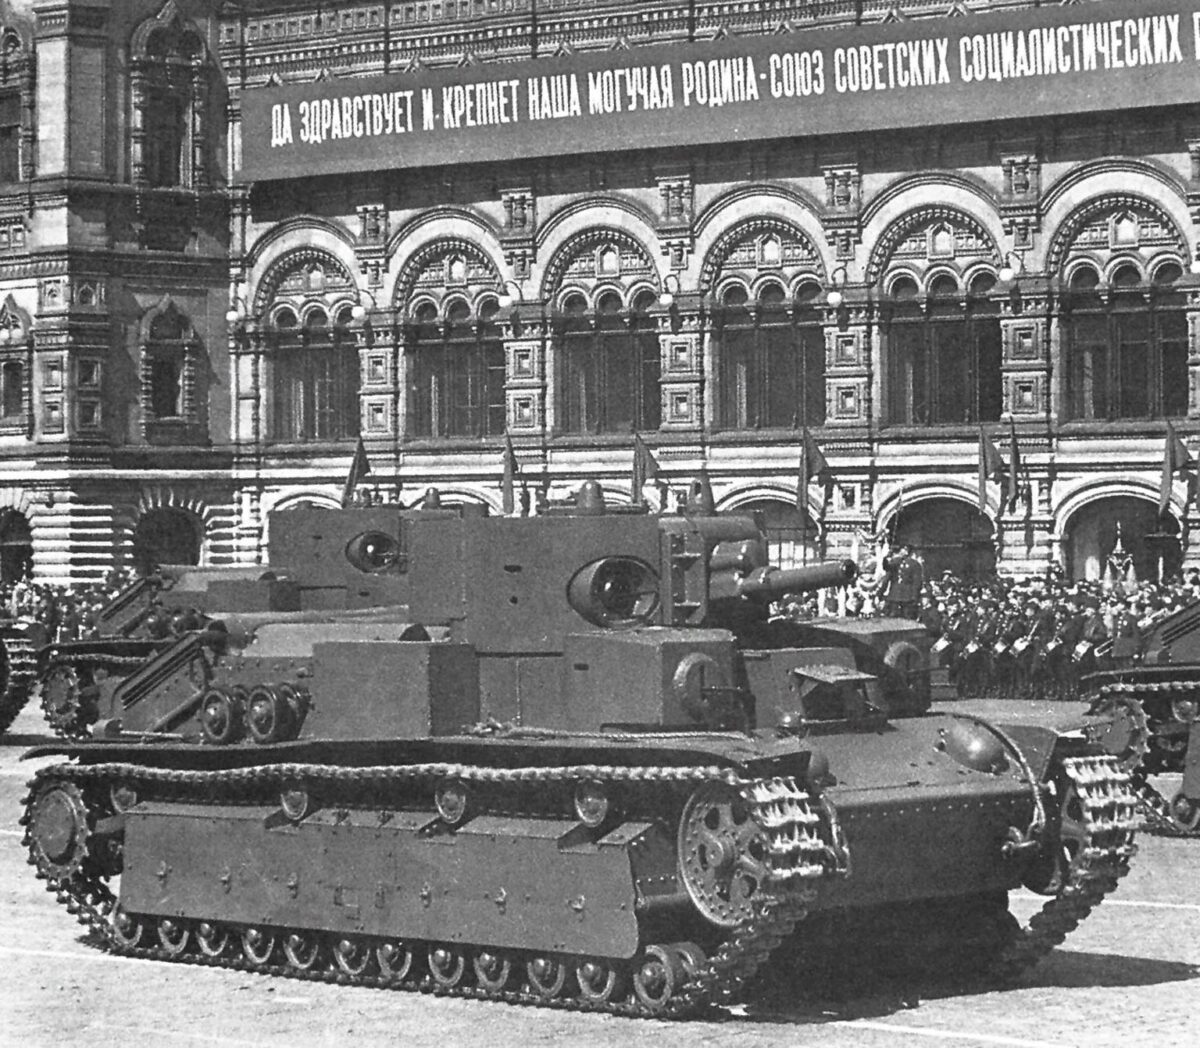 T-28 medium tank